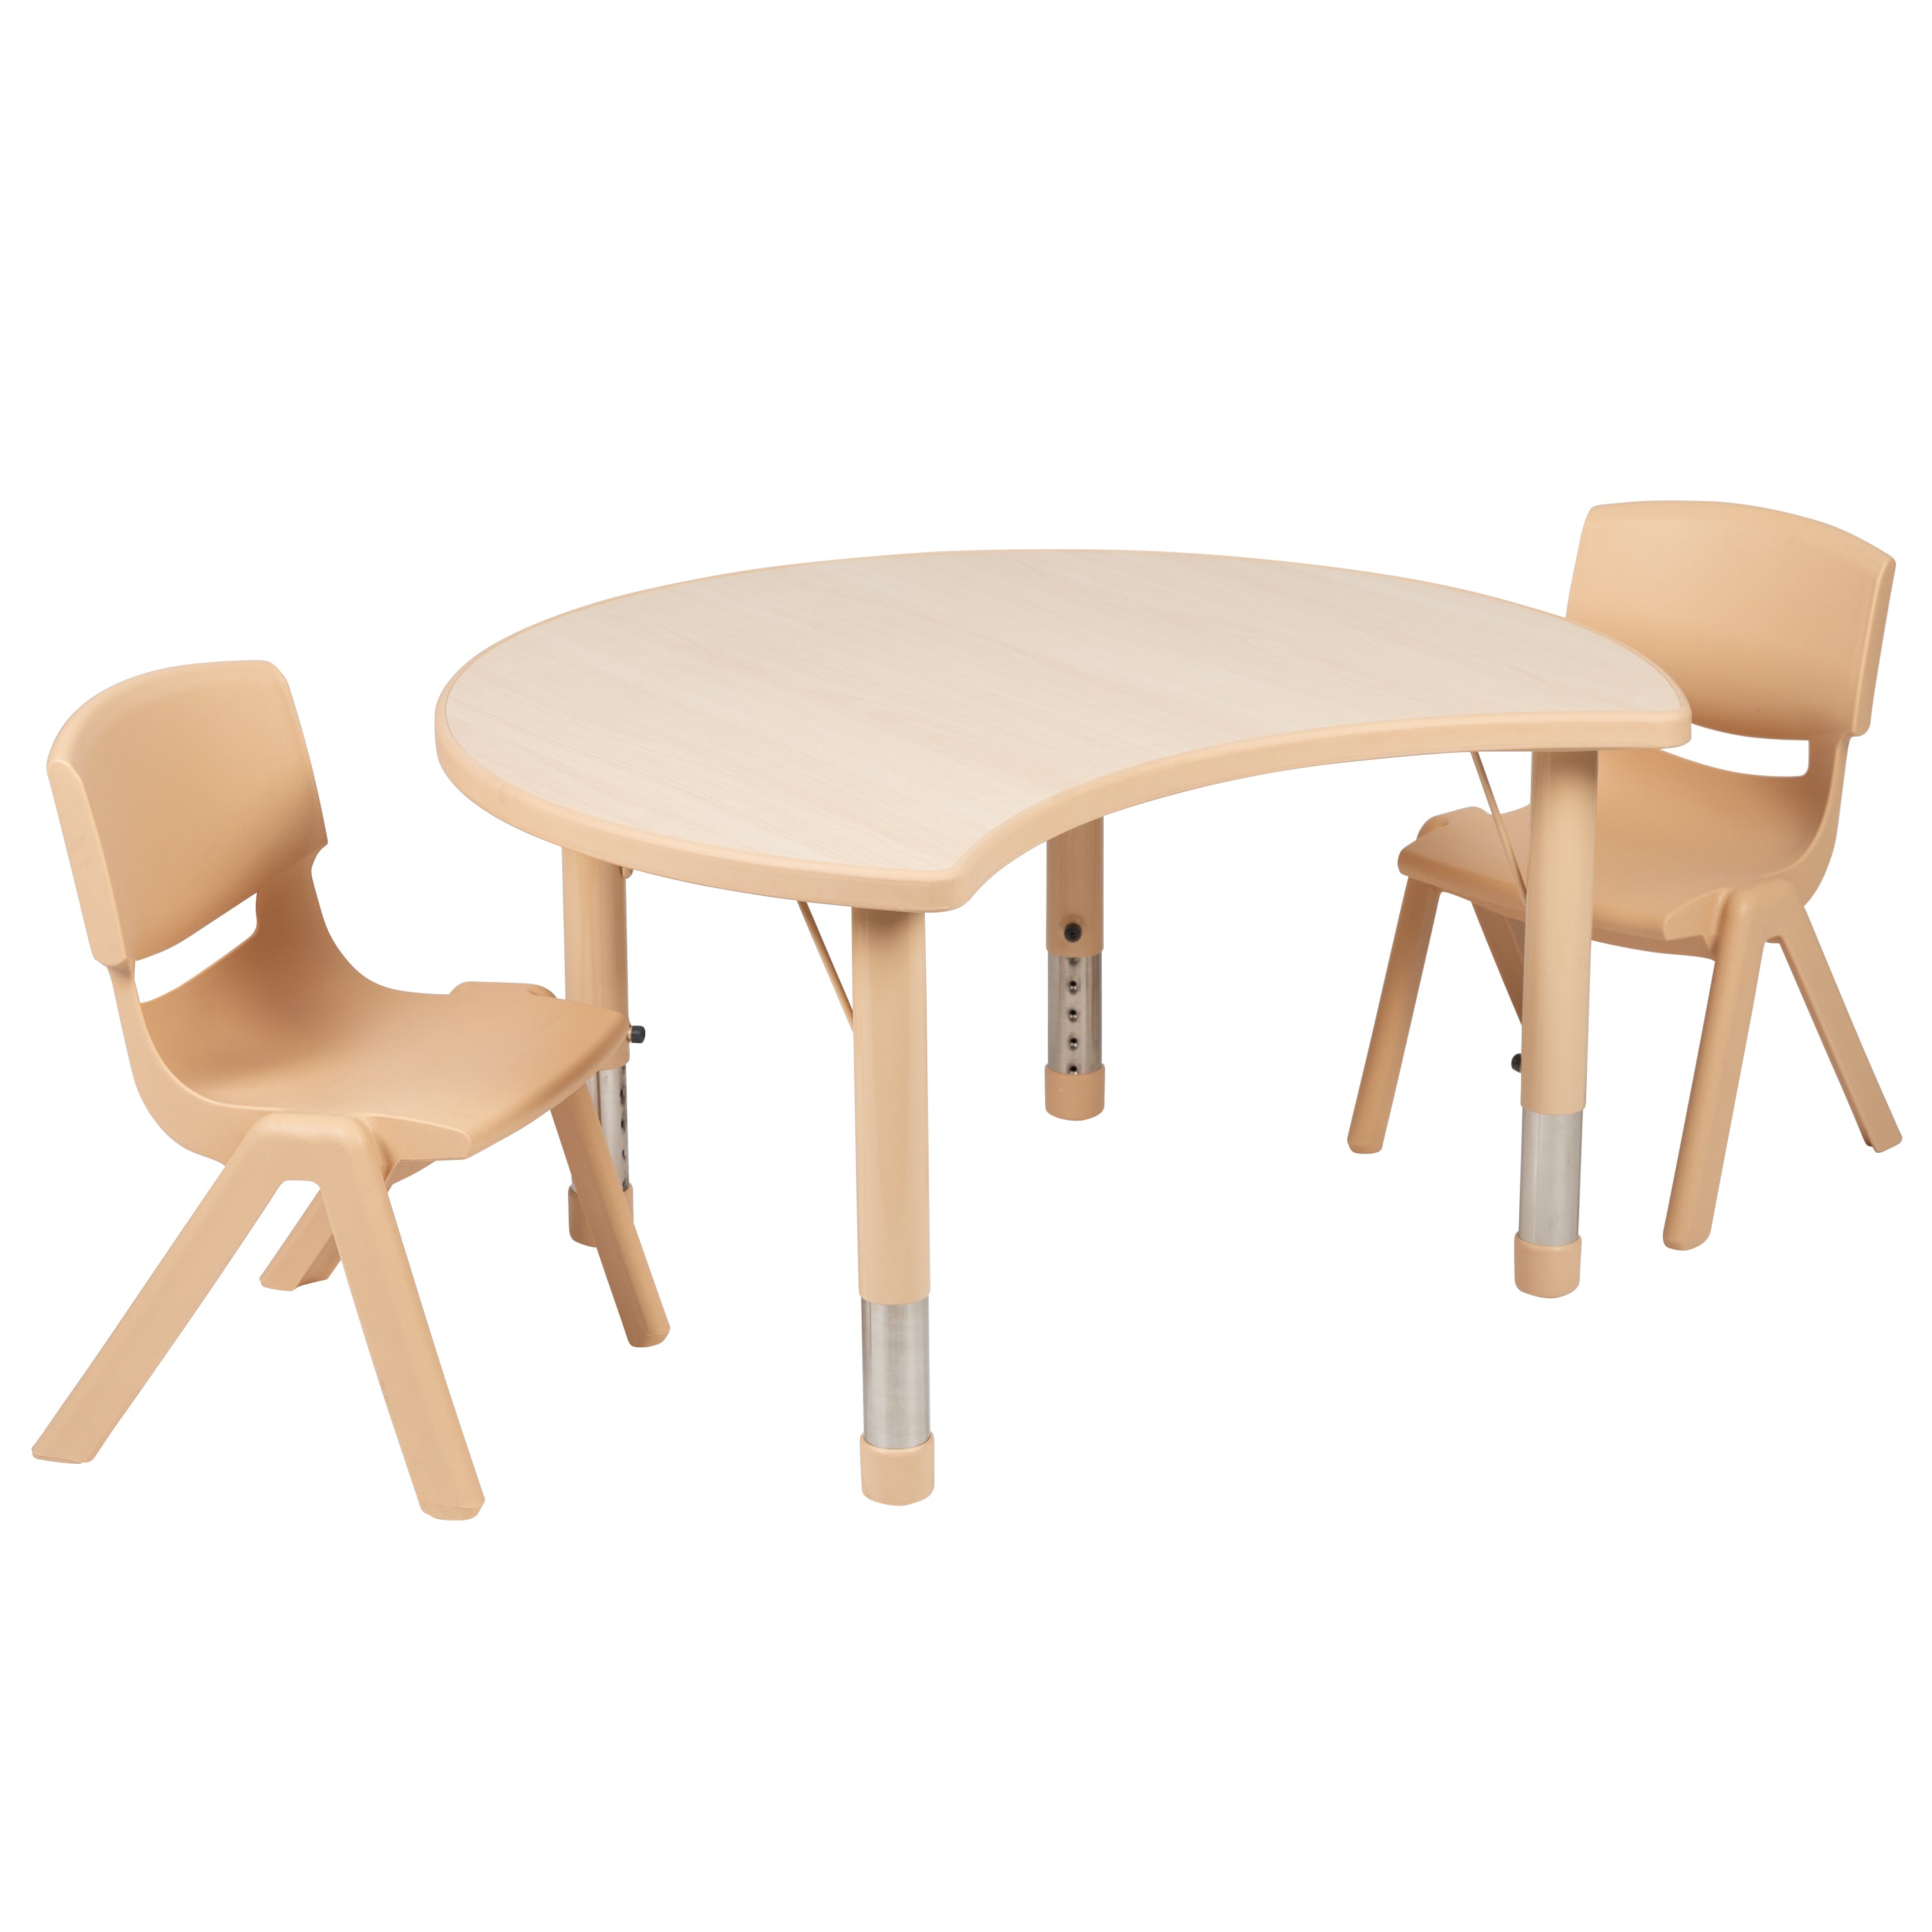 25.125"W x 35.5"L Crescent Plastic Height Adjustable Activity Table Set with 2 Chairs-Crescent Activity Table Set-Flash Furniture-Wall2Wall Furnishings